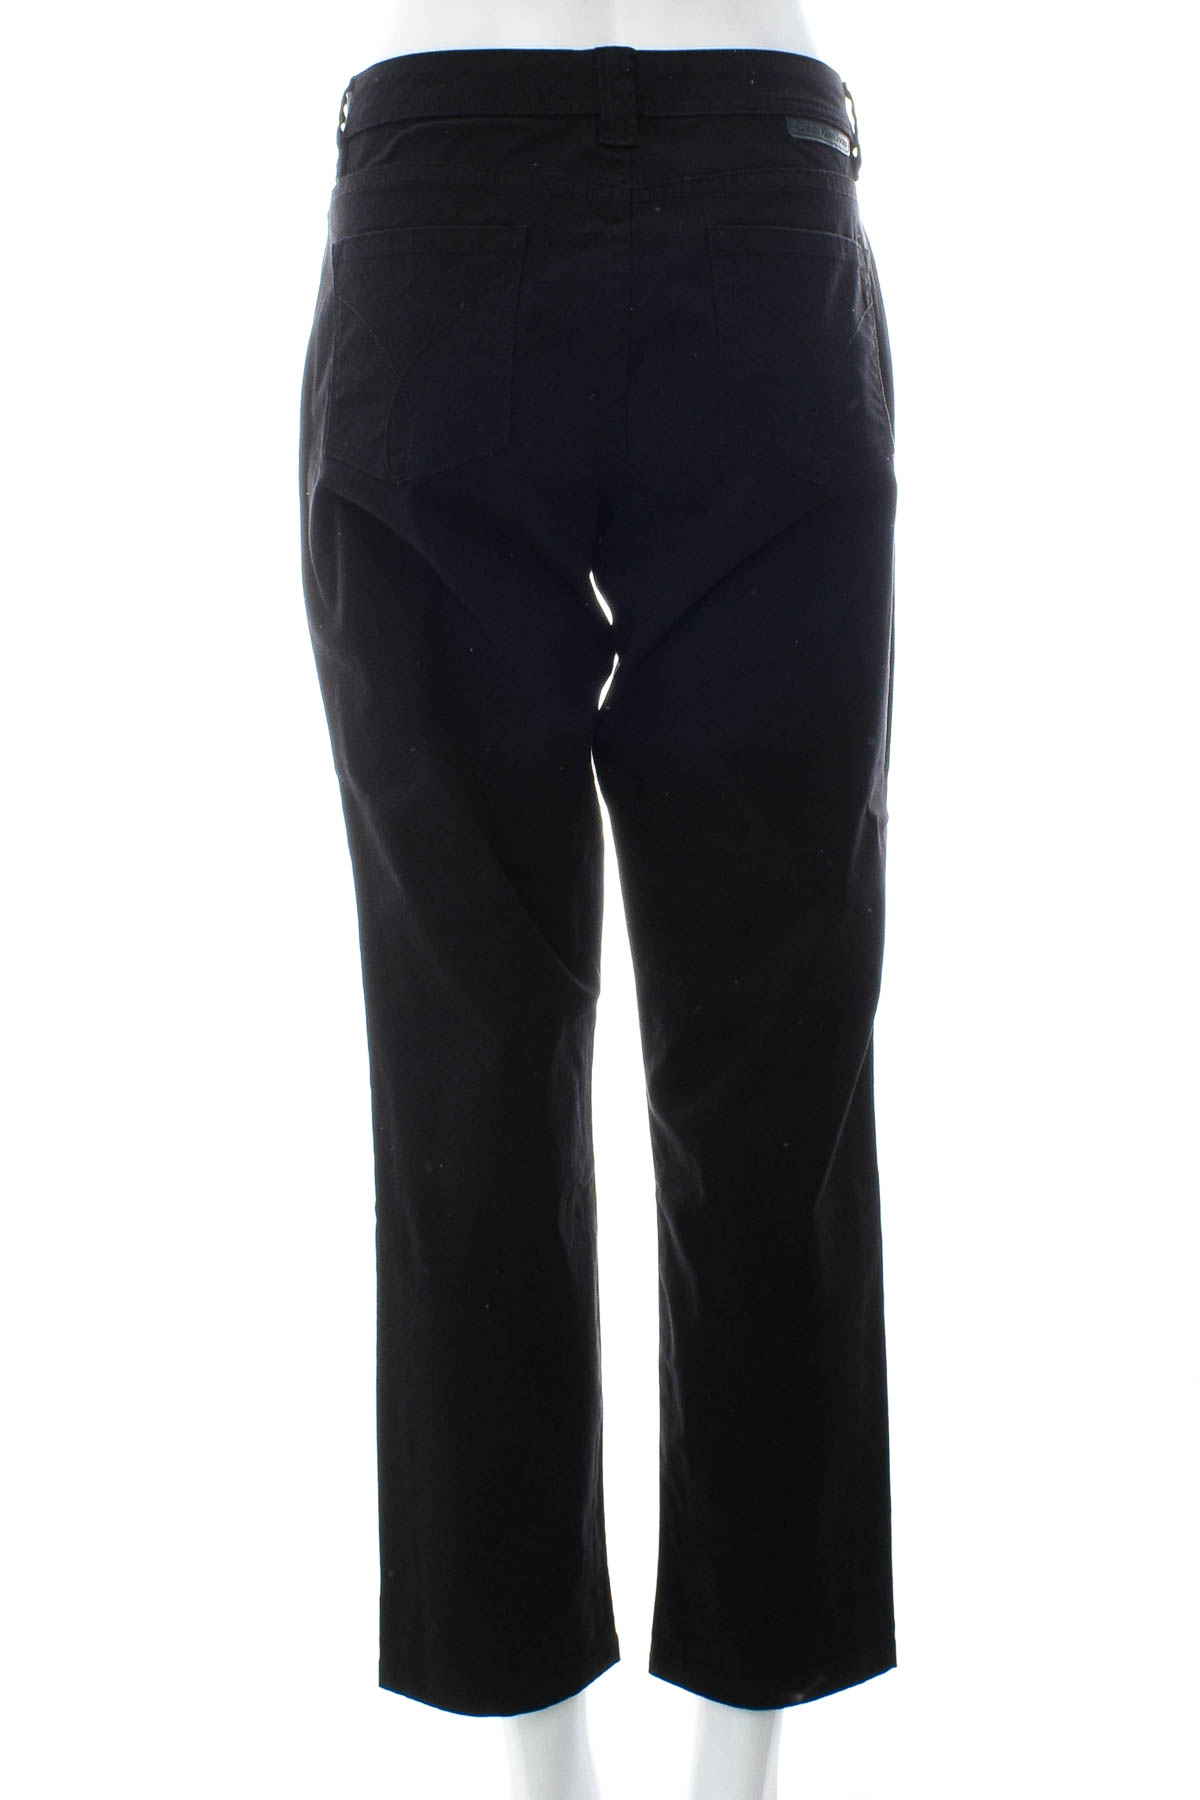 Spodnie damskie - Calvin Klein Jeans - 1